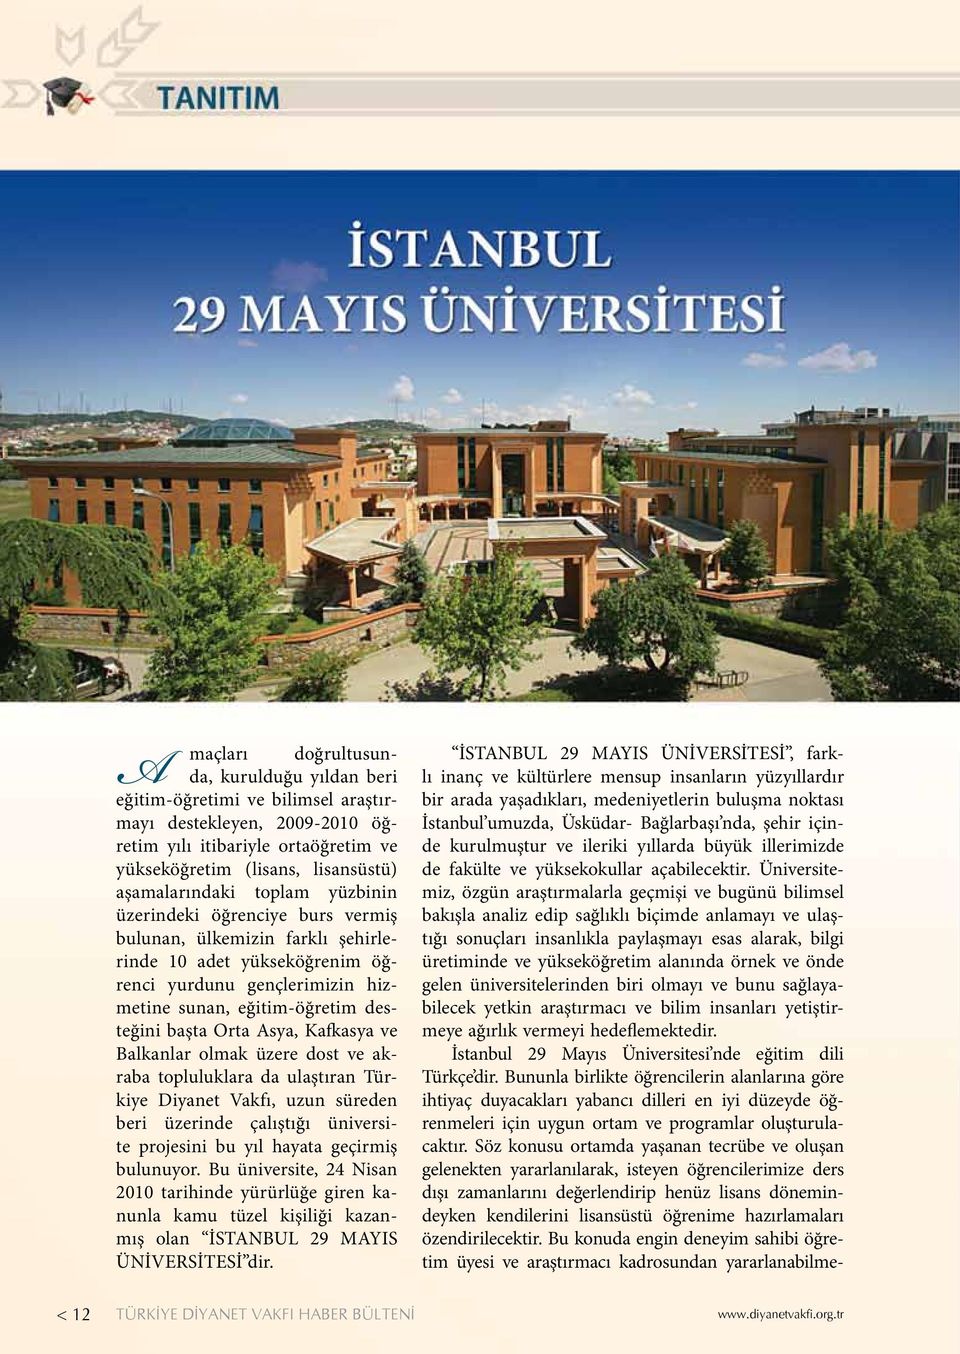 Kafkasya ve Balkanlar olmak üzere dost ve akraba topluluklara da ulaştıran Türkiye Diyanet Vakfı, uzun süreden beri üzerinde çalıştığı üniversite projesini bu yıl hayata geçirmiş bulunuyor.